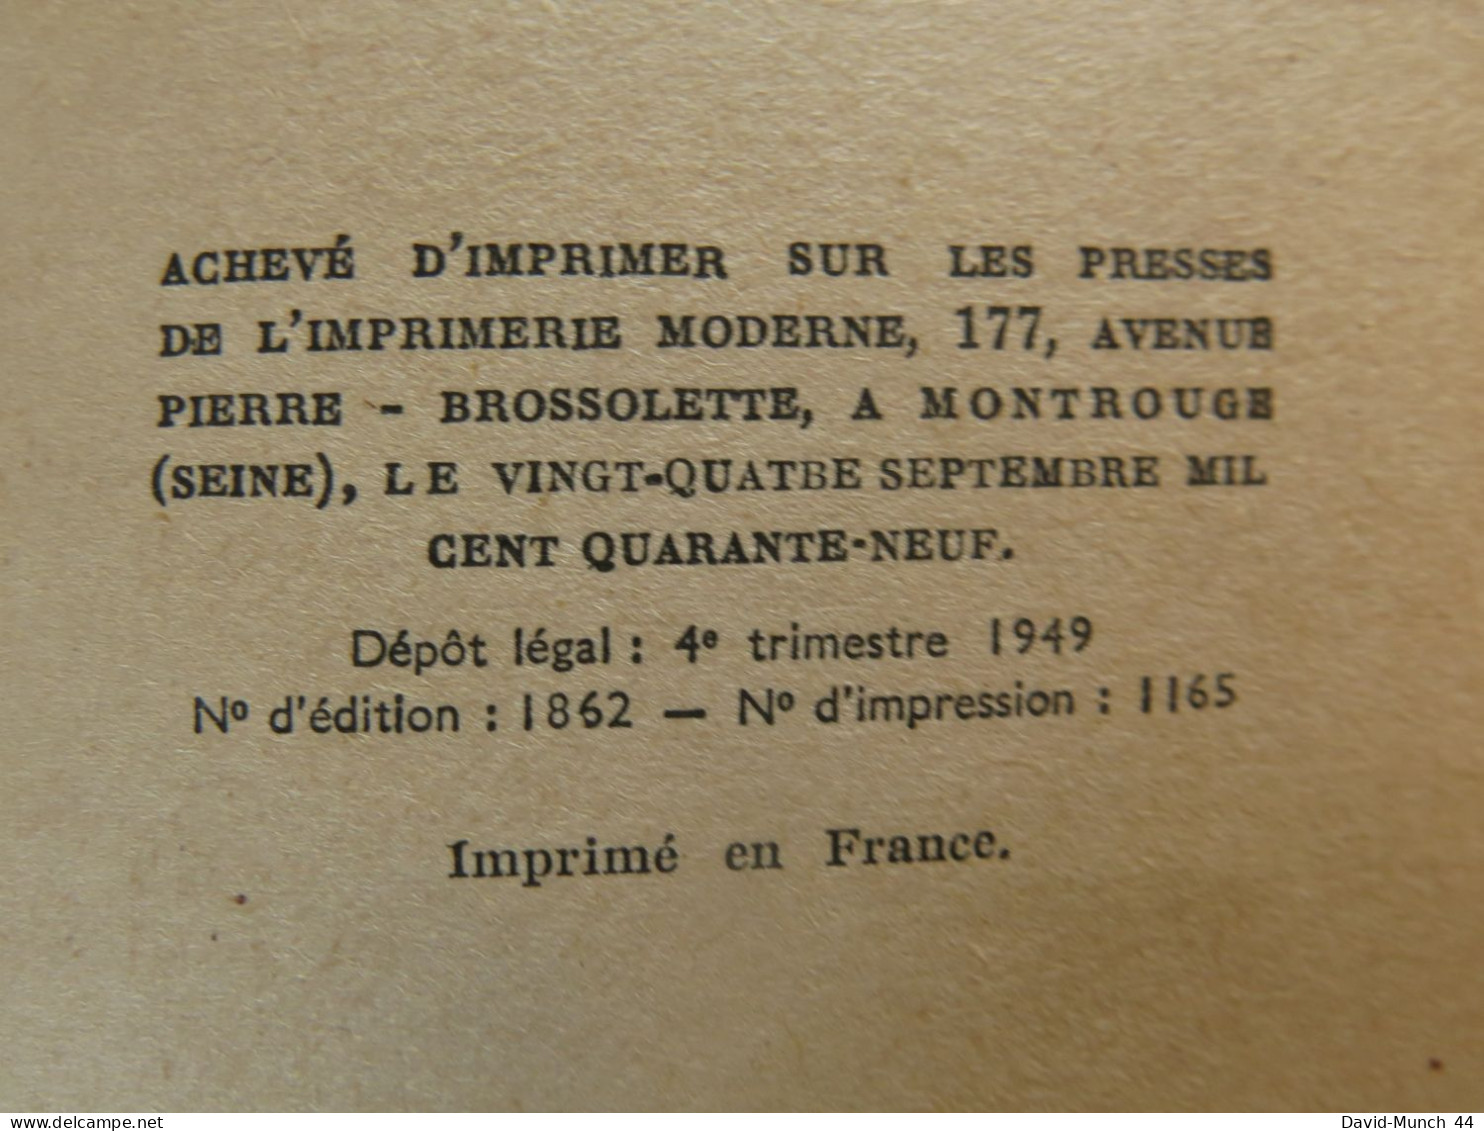 Les Meubles de Pierre Gascar. Gallimard, Nrf. 1949, exemplaire dédicacé par l'auteur